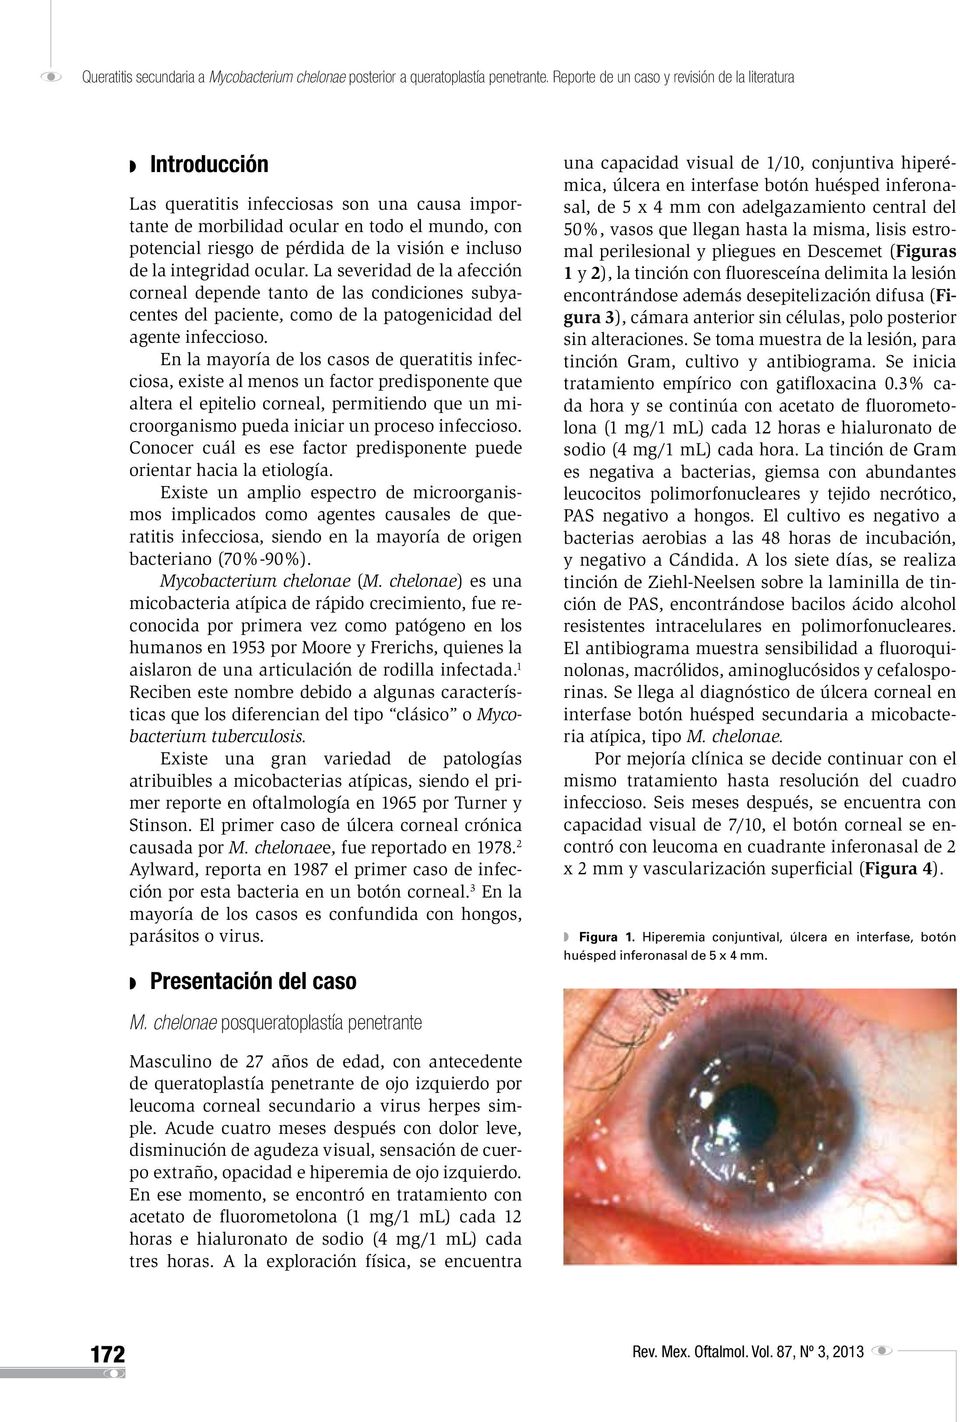 incluso de la integridad ocular. La severidad de la afección corneal depende tanto de las condiciones subyacentes del paciente, como de la patogenicidad del agente infeccioso.